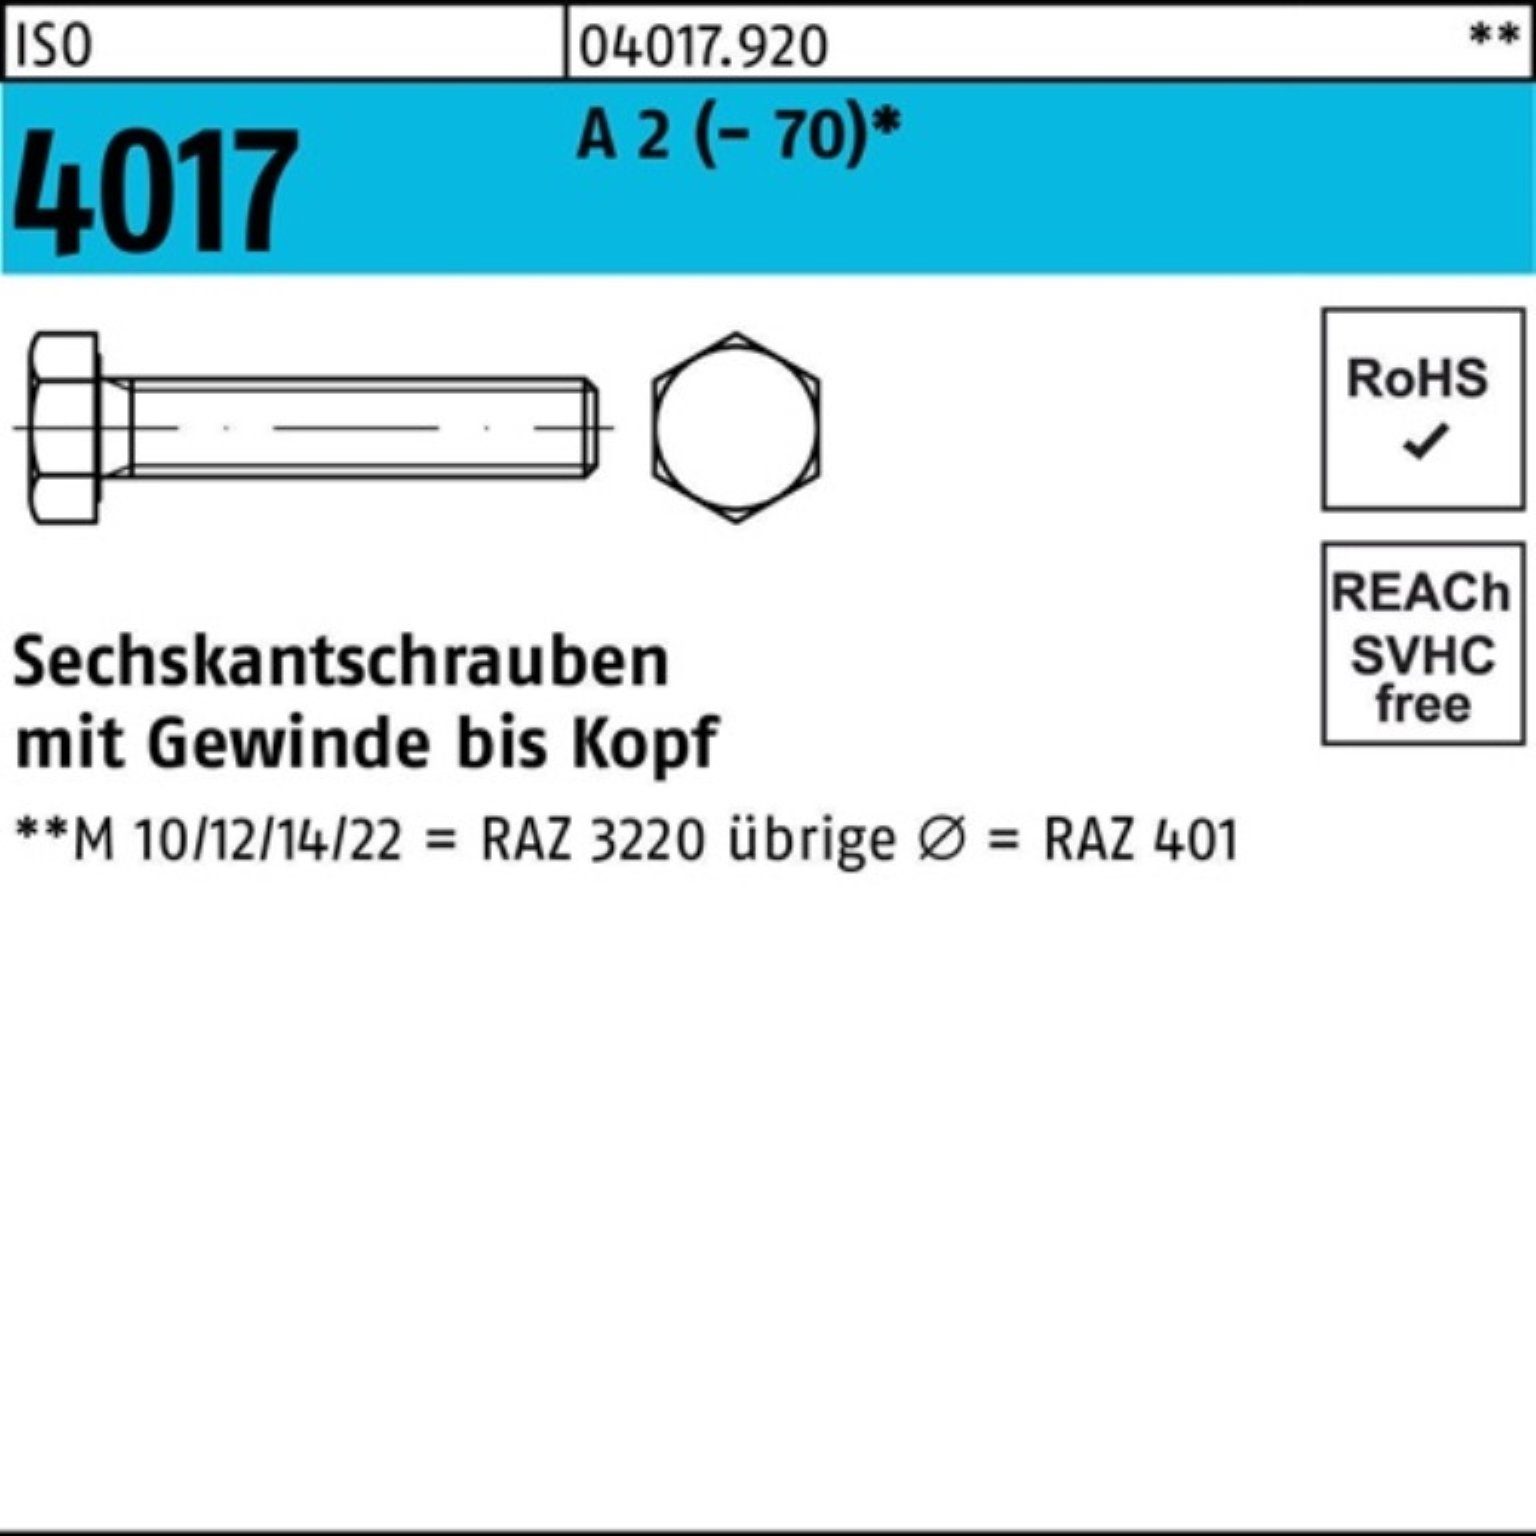 Bufab Sechskantschraube 100er Pack Sechskantschraube 4017 VG 14 M5x 100 A (70) Stück ISO 2